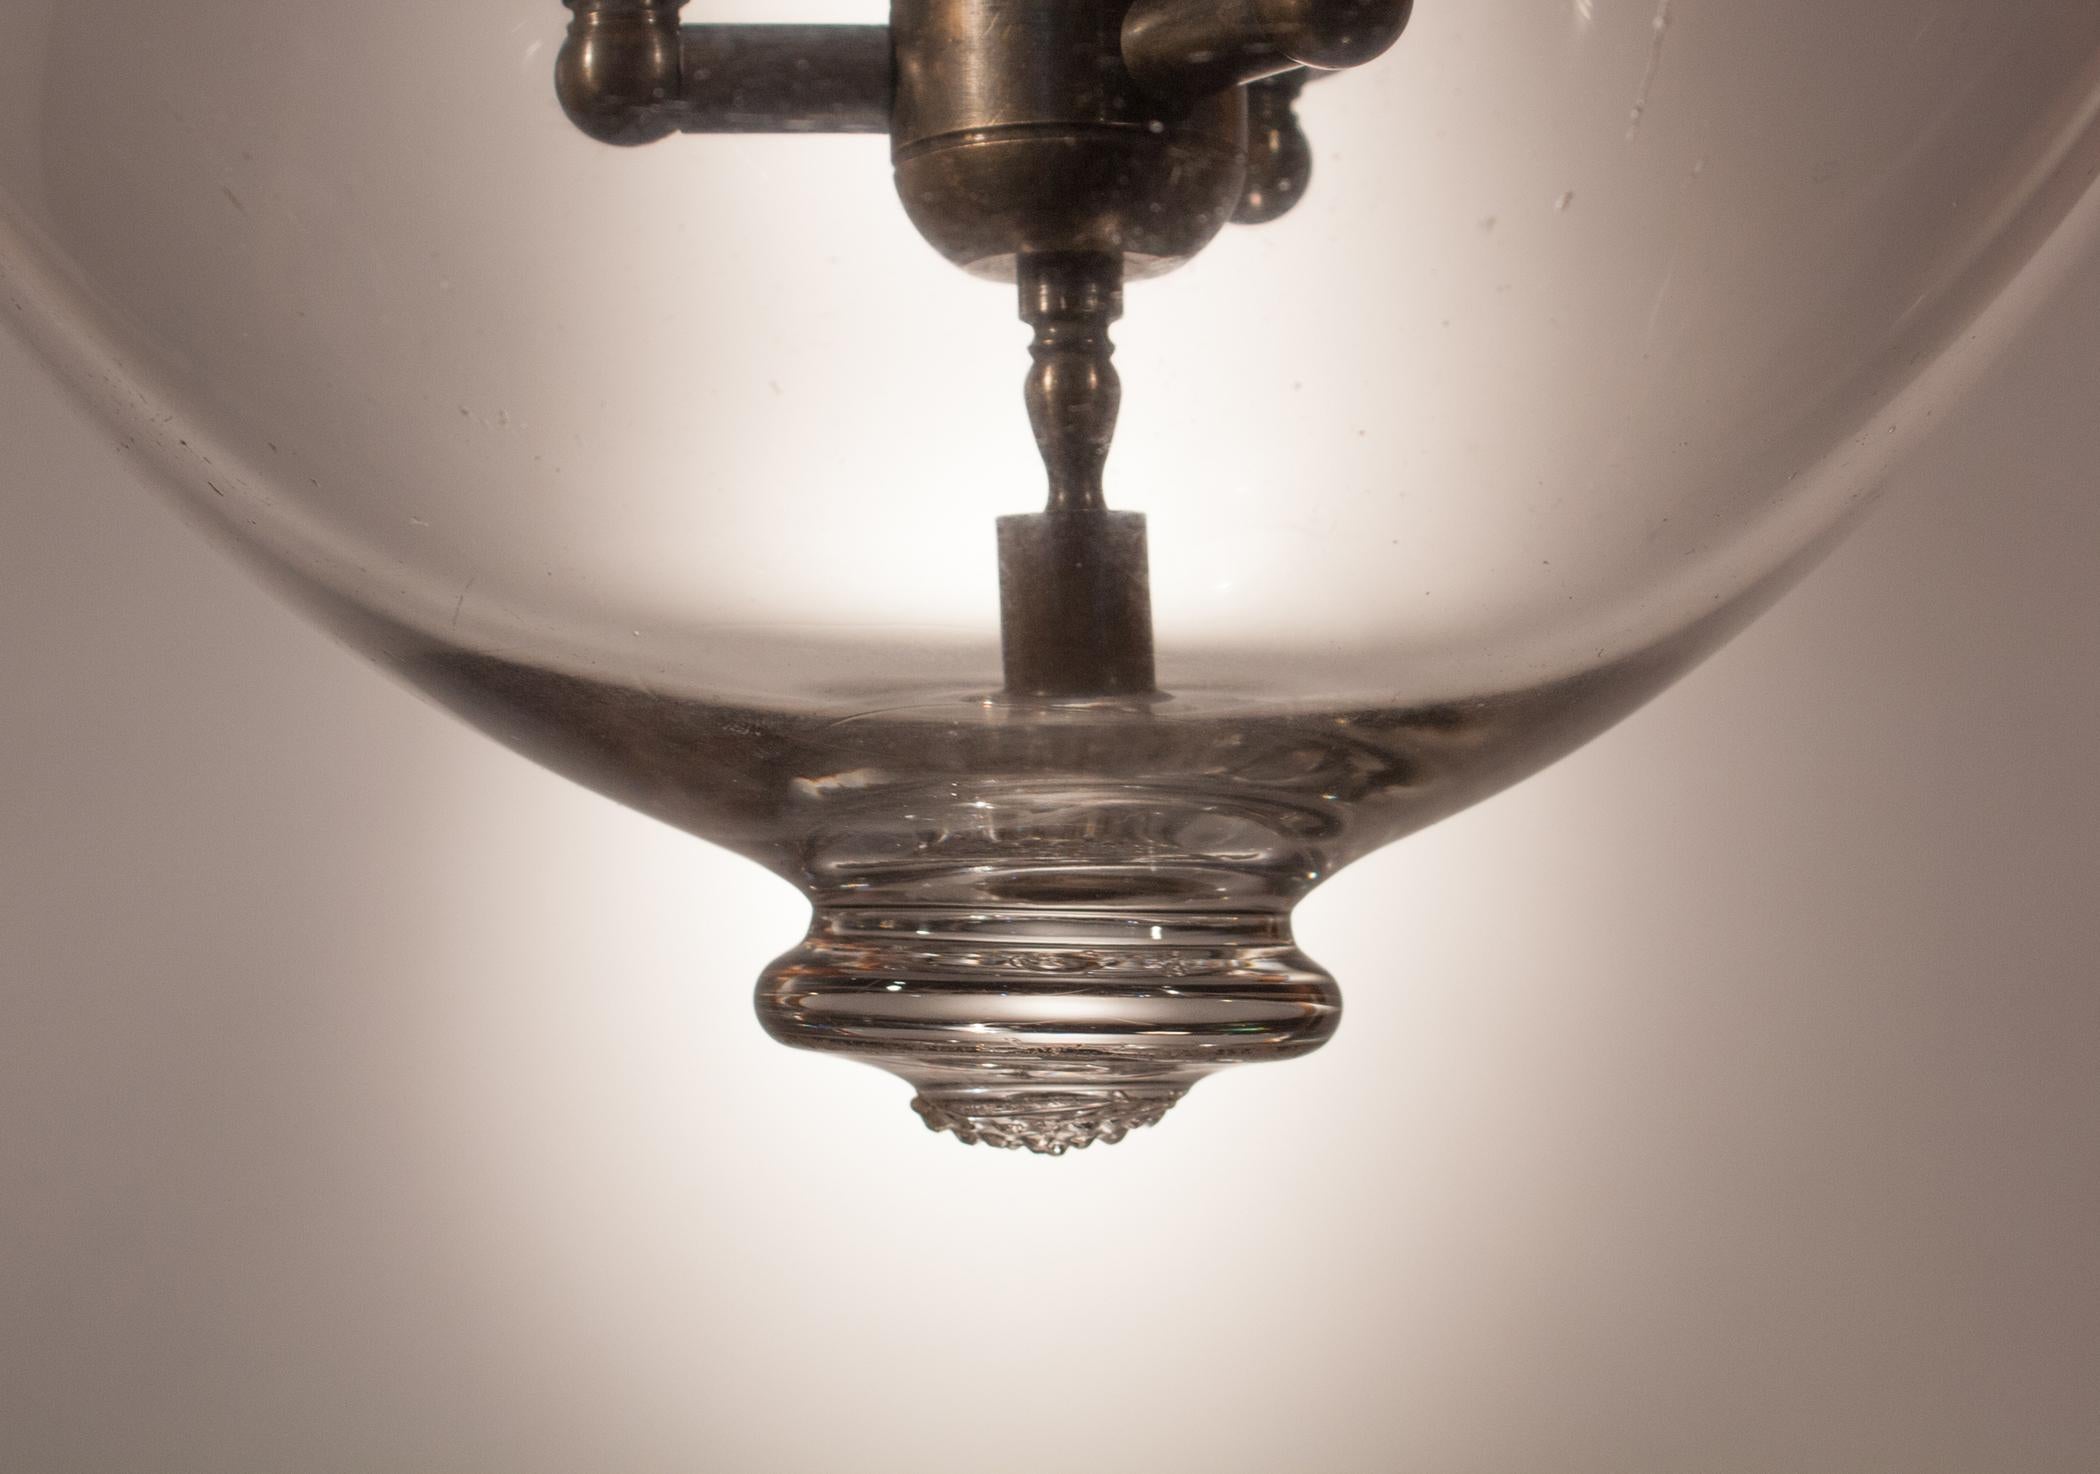 Blown Glass Antique Bell Jar Lantern with Vine Etching